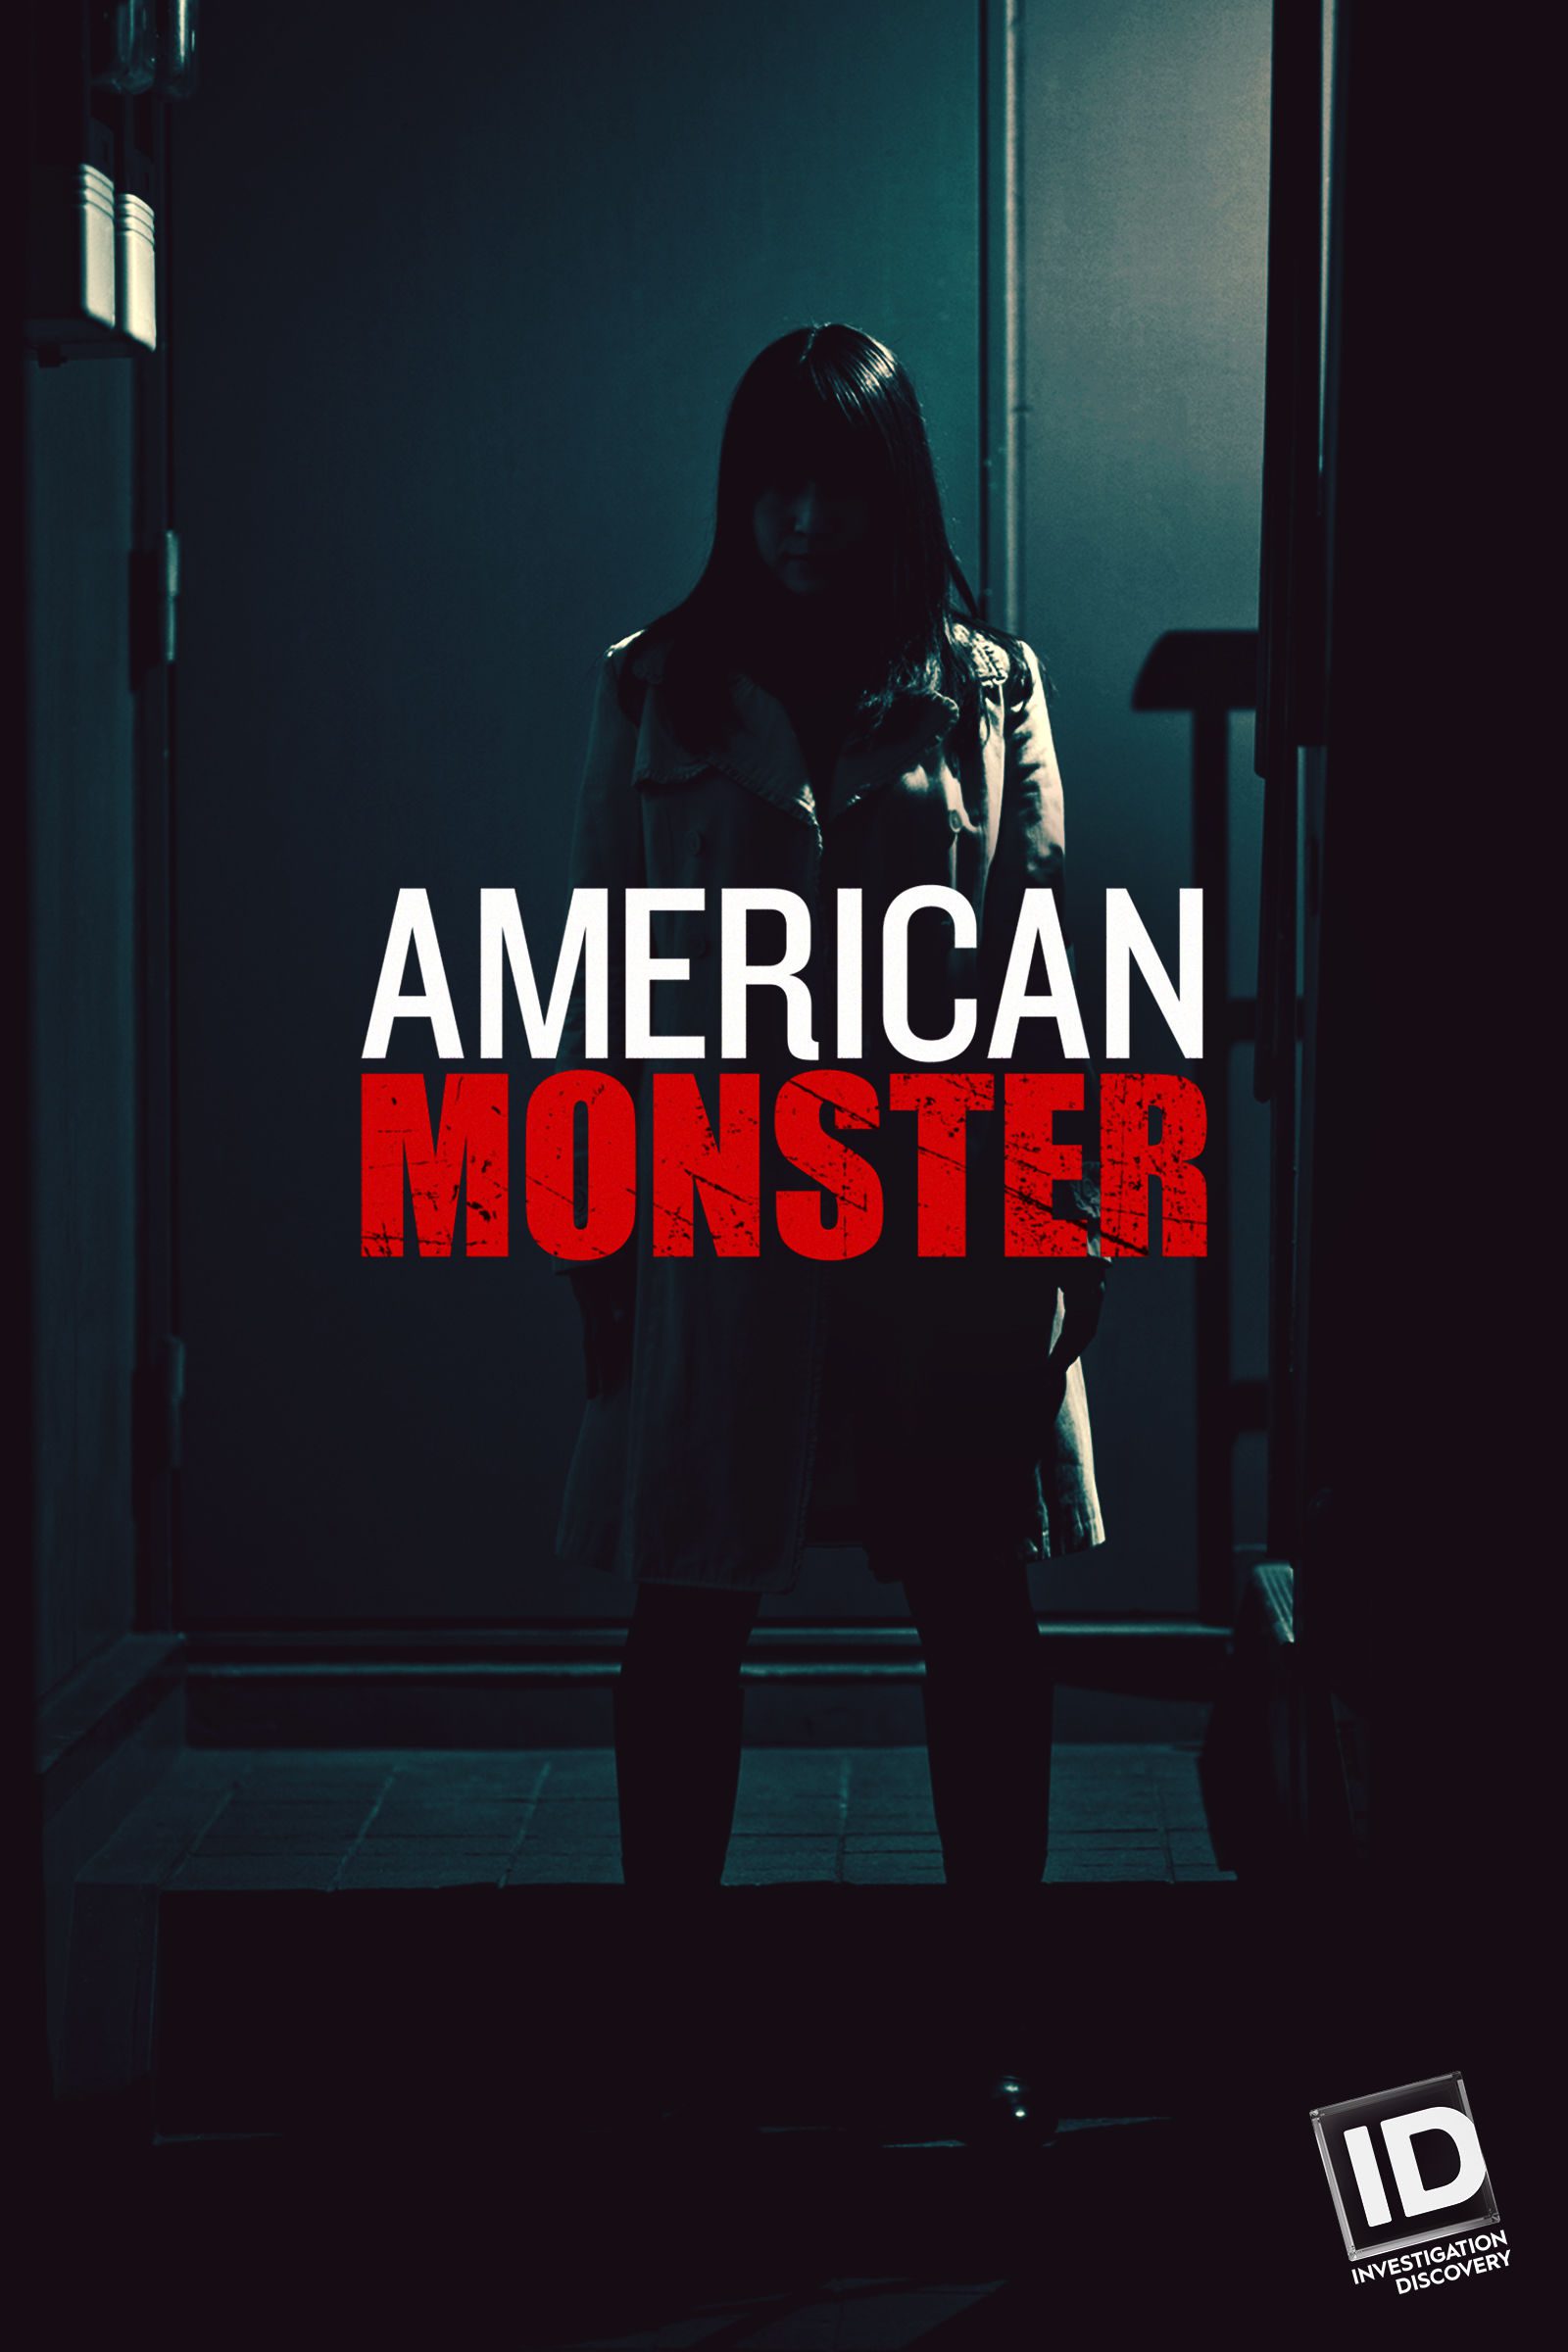 American Monster teaser image